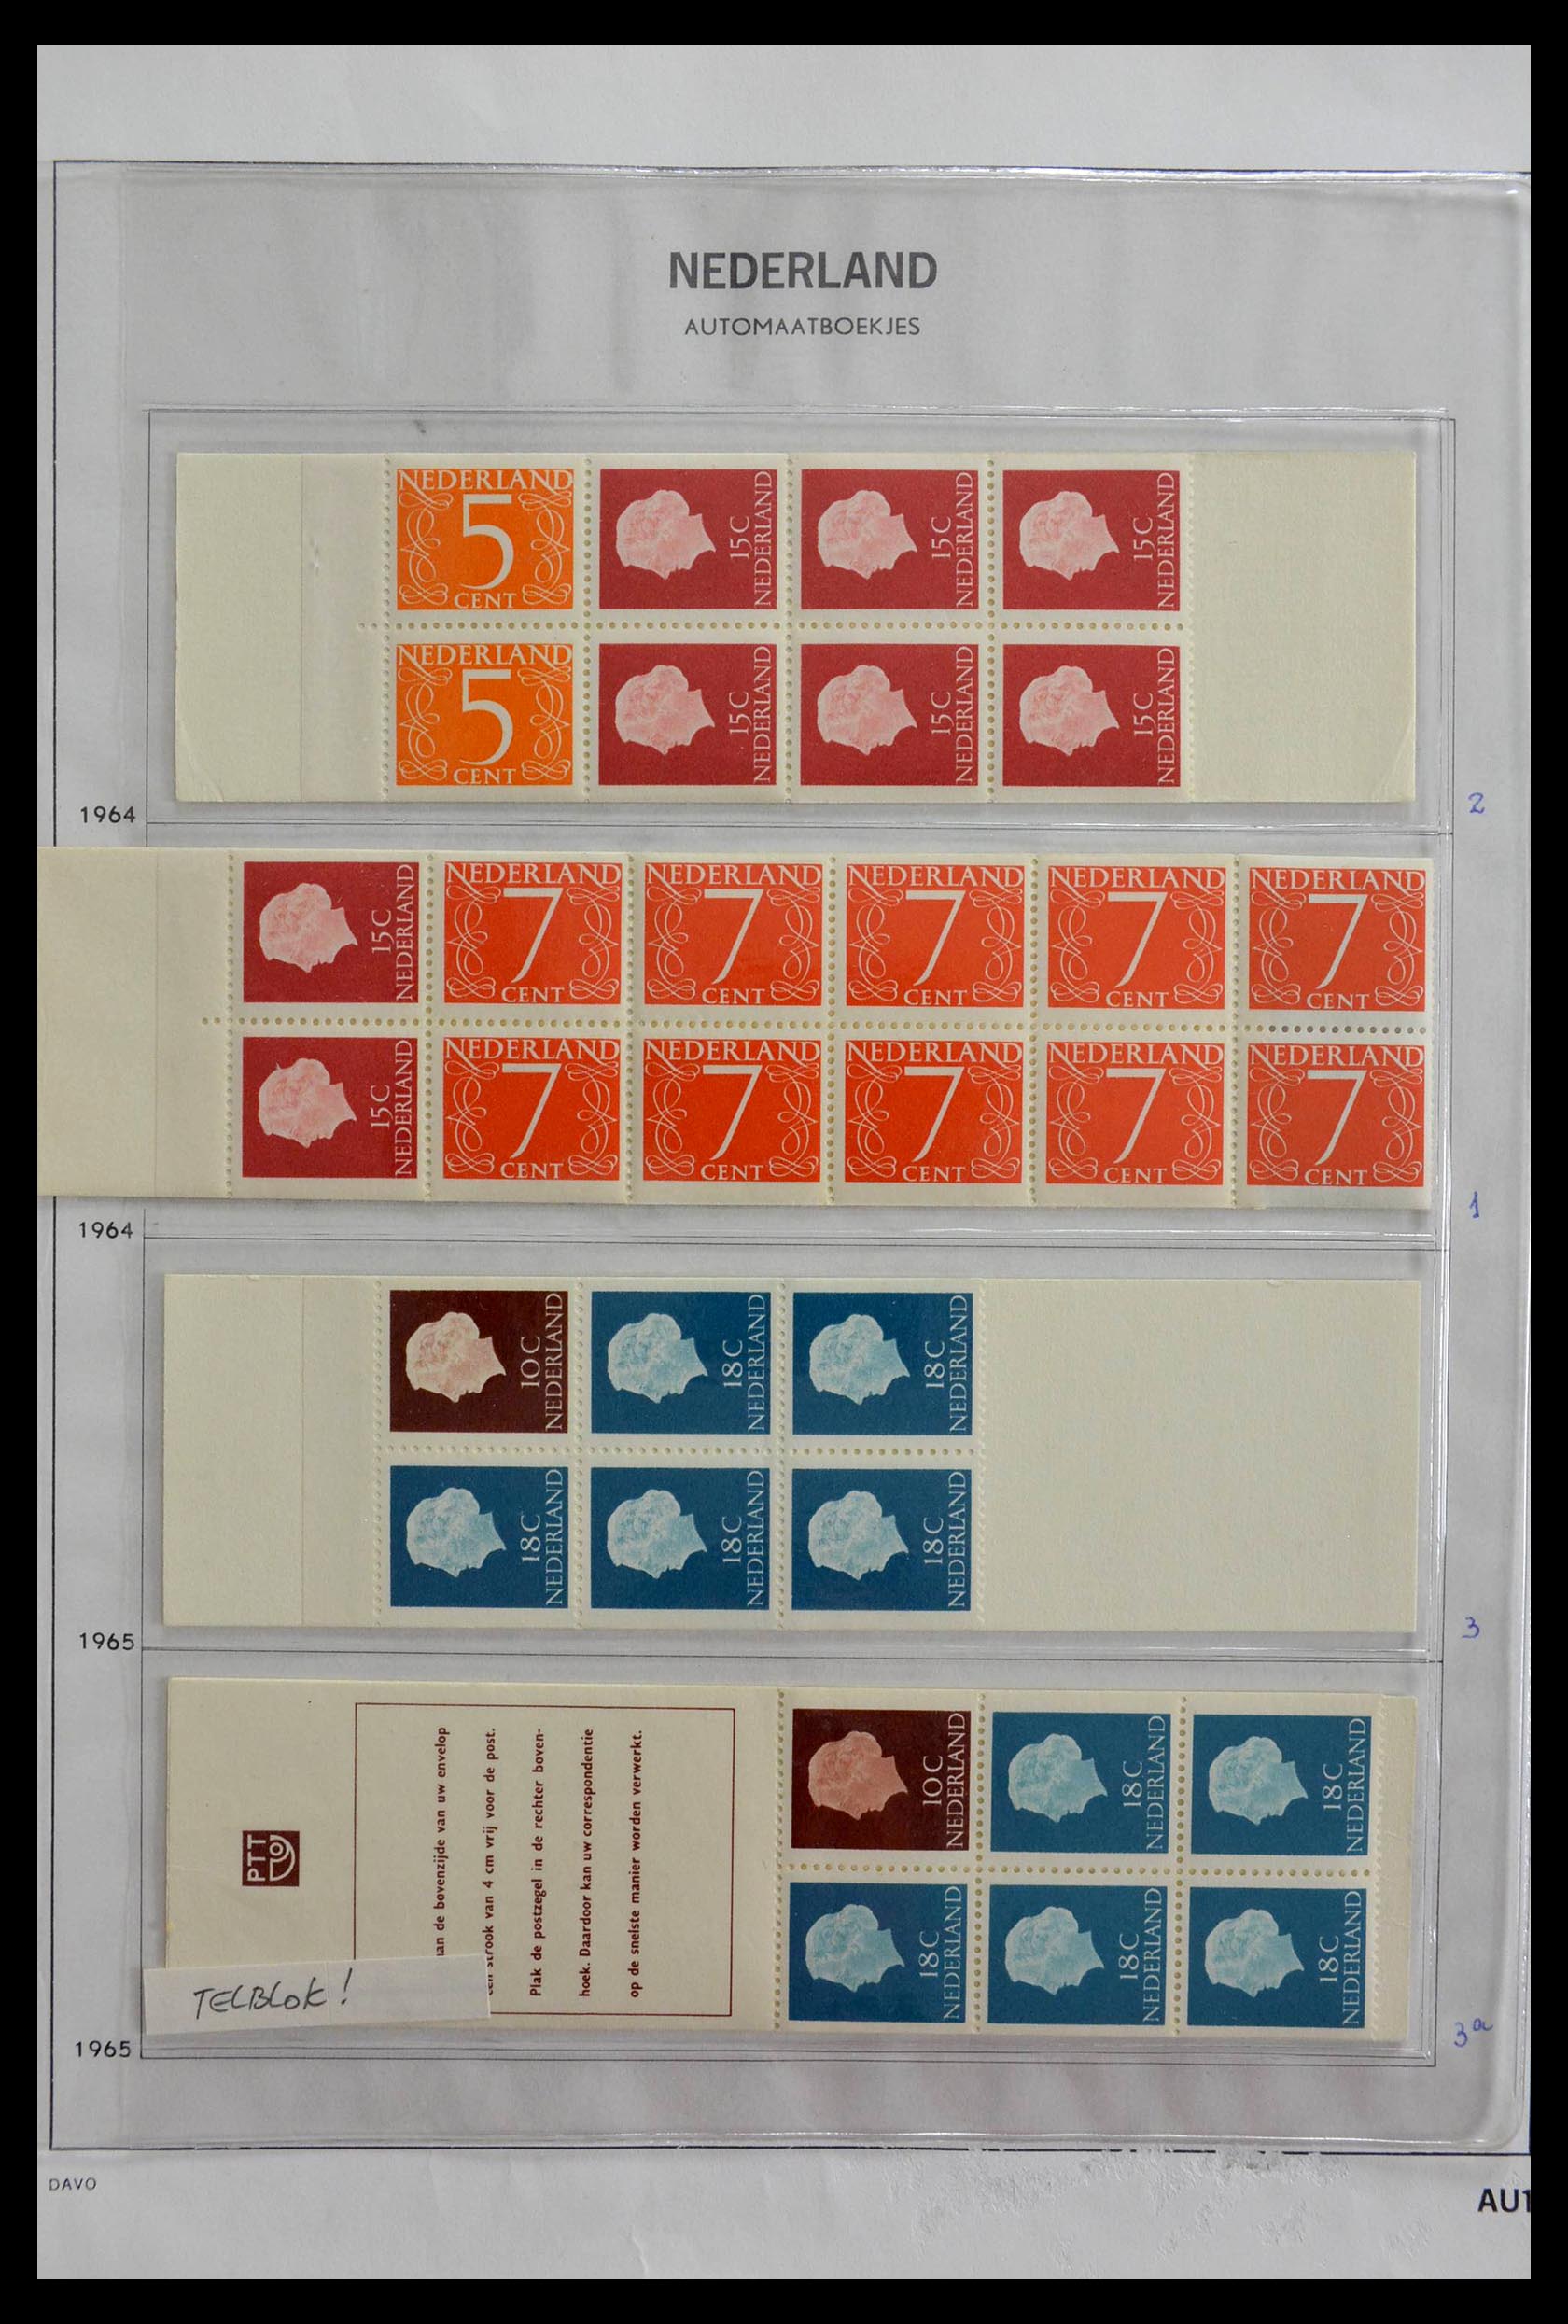 28853 001 - 28853 Netherlands stampbooklets 1964-2005.